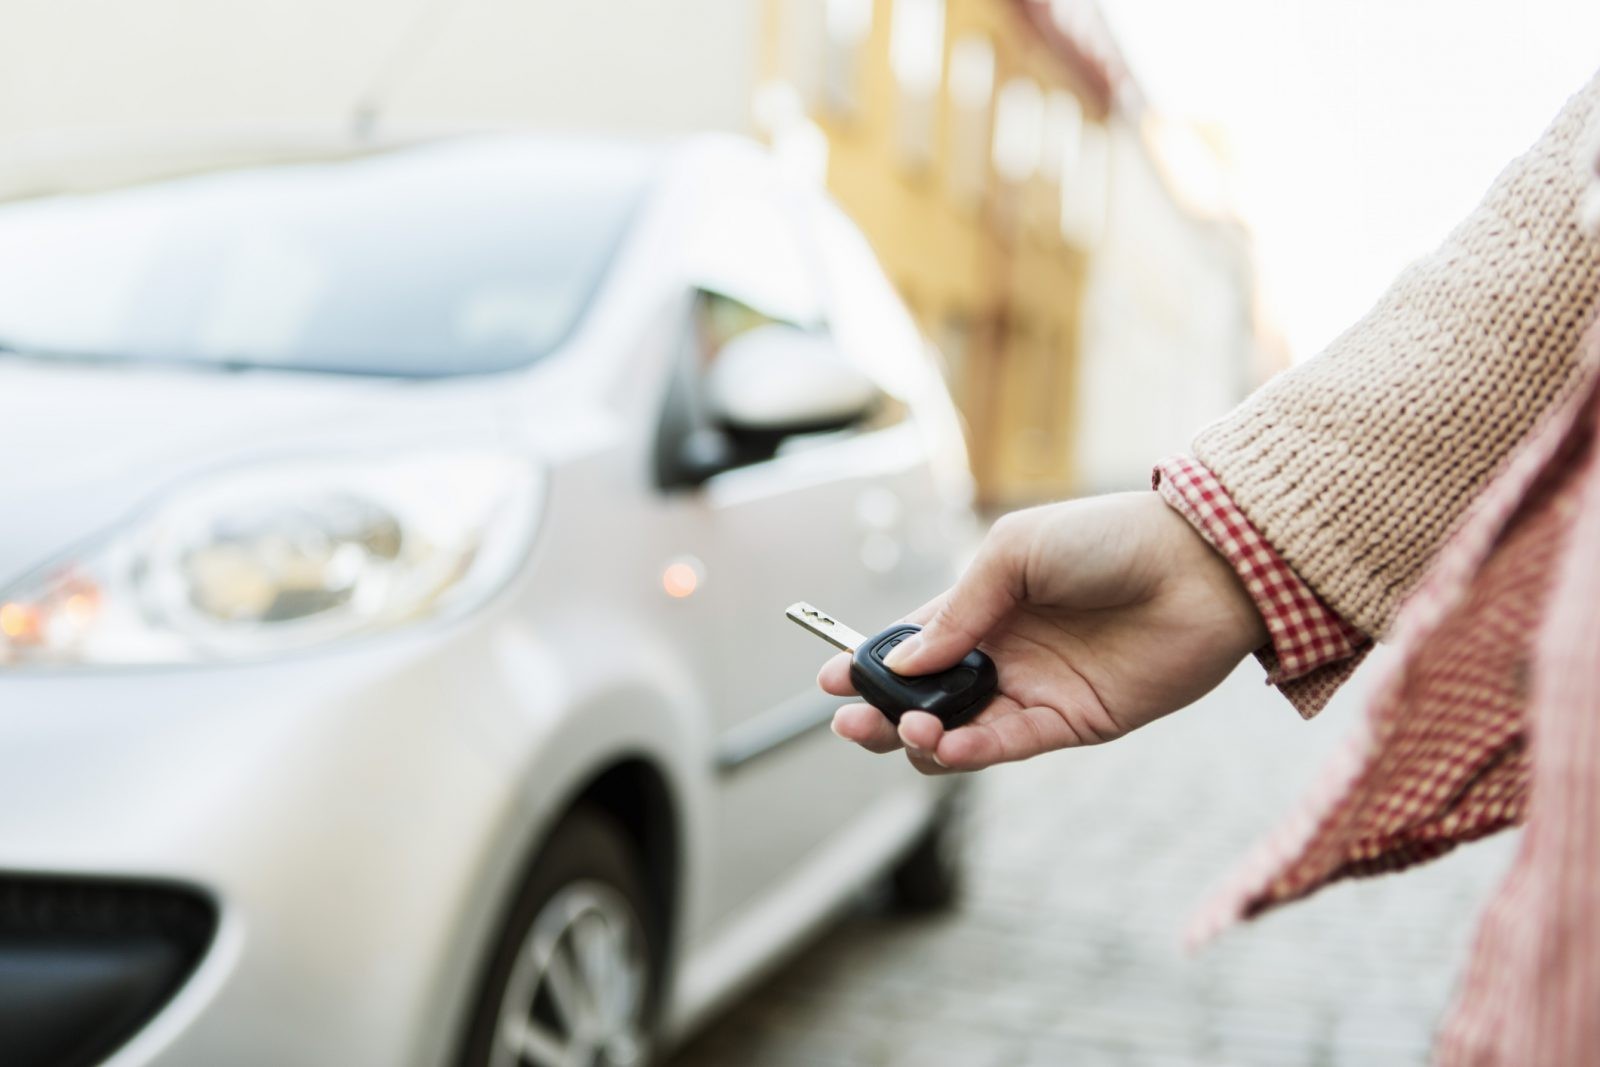 MotoSzkółka: jak sprawdzić samochód przed kupnem? Sprawdzone rady